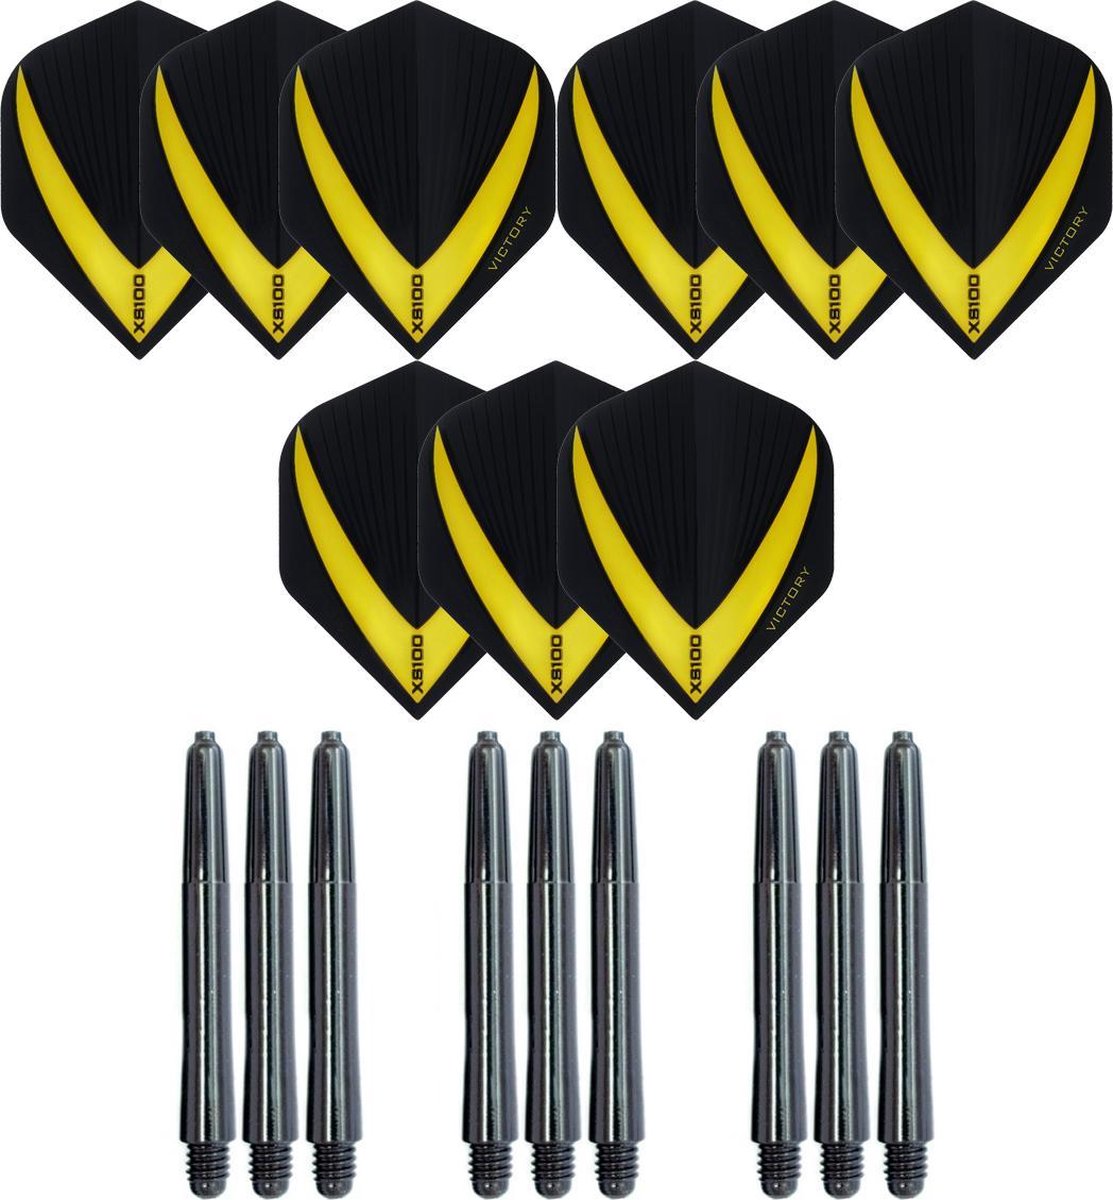 3 sets (9 stuks) Super Sterke - Geel - Vista-X - darts flights - inclusief 3 sets (9 stuks) - medium - darts shafts